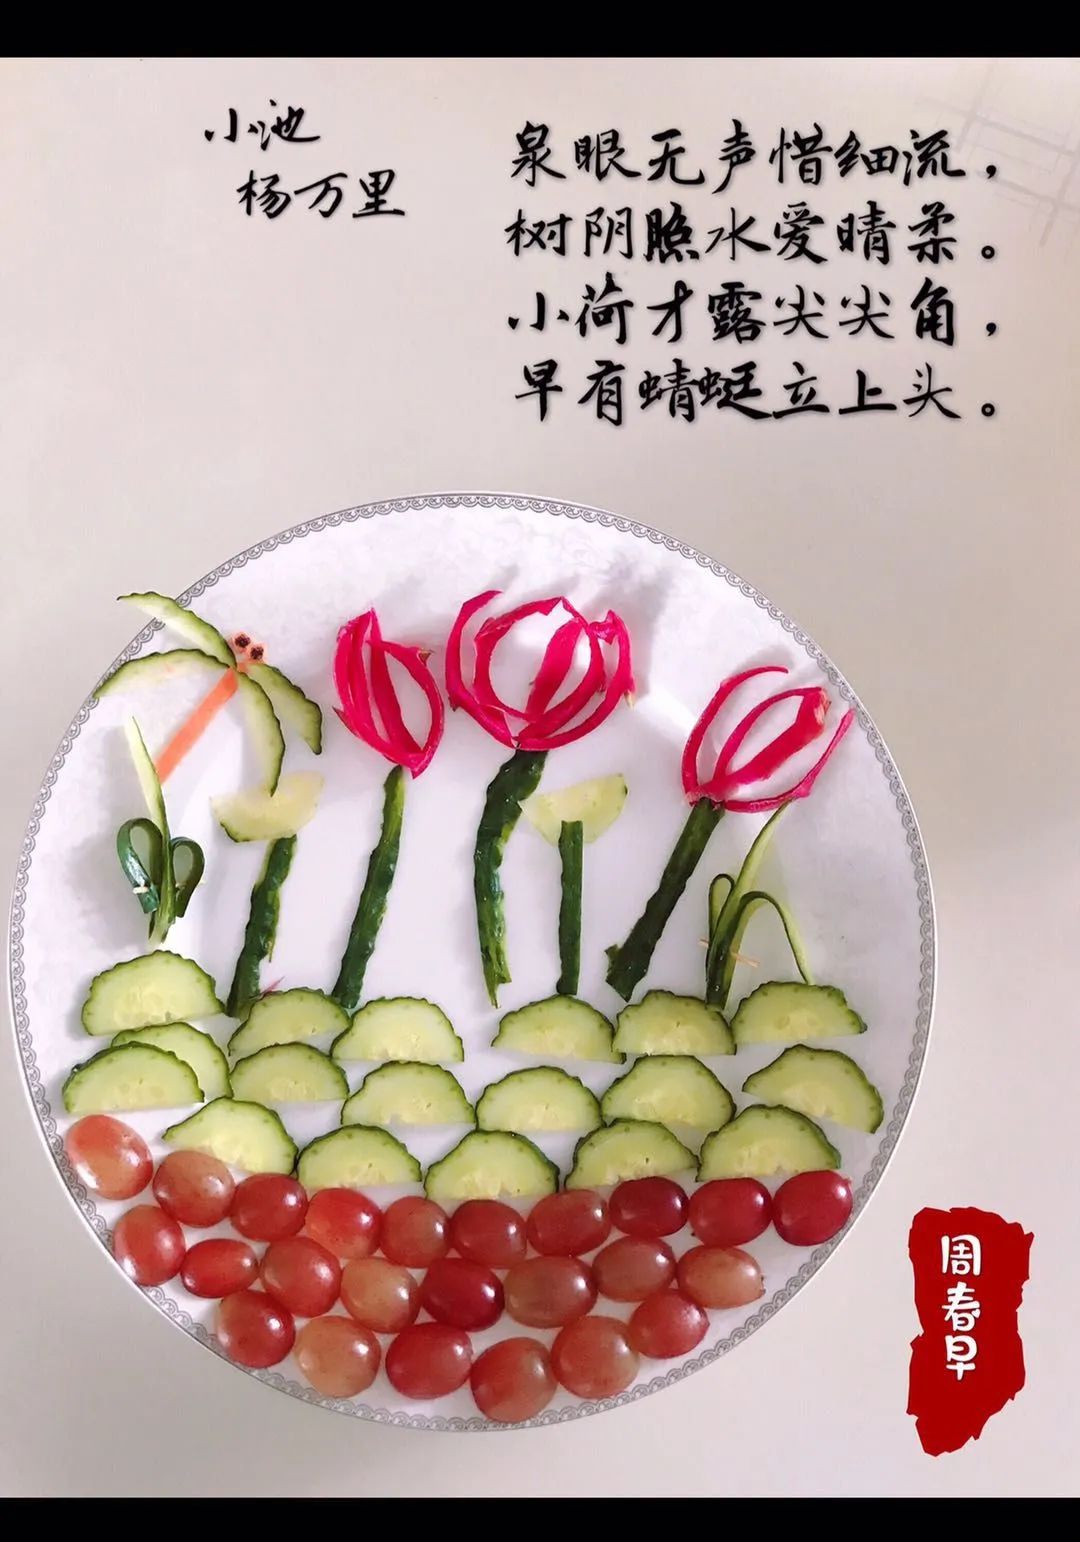 蔬菜水果诗词拼盘图片